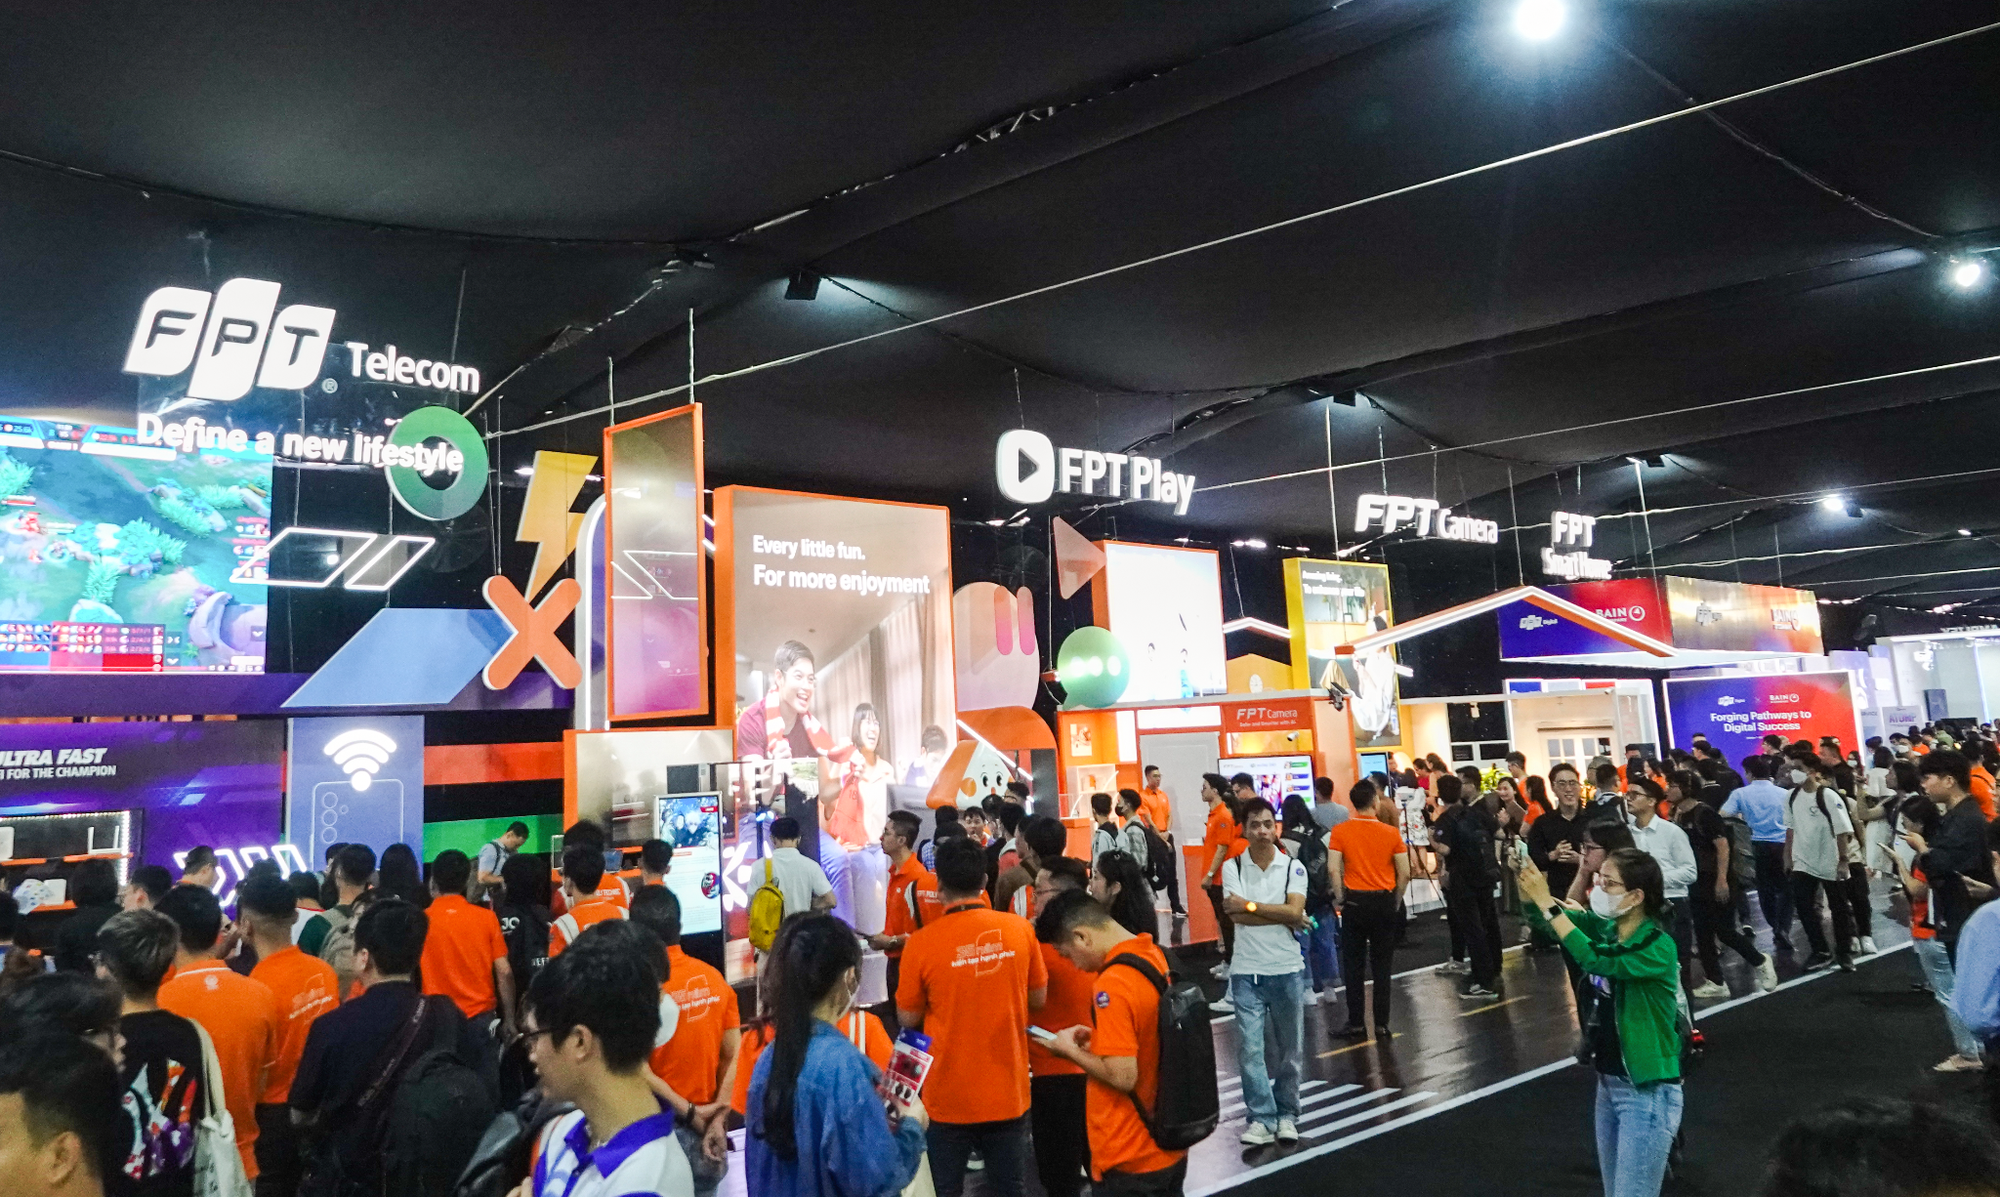 FPT Telecom sẽ trở thành nhà cung cấp hạ tầng Internet tốt hàng đầu cho game tại Việt Nam - Ảnh 5.